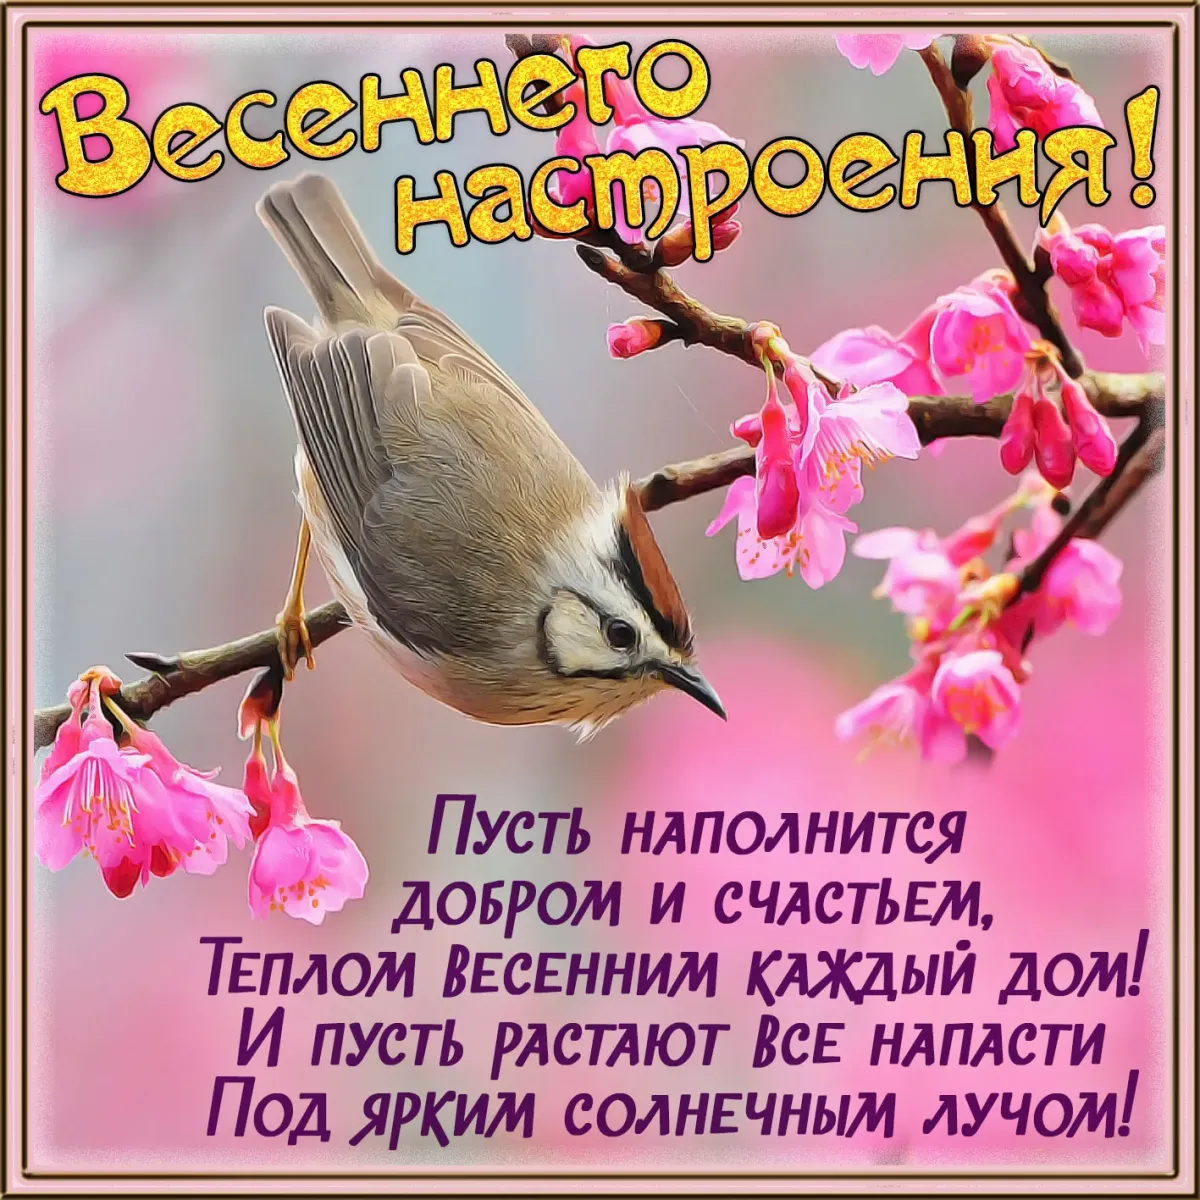 Утро доброе новые красивые с пожеланиями весны. Поздравление с добрым весенним утром. Весенние пожелания. Пожелания с добрым весенним утром. Поздравления с добрым утром весны.